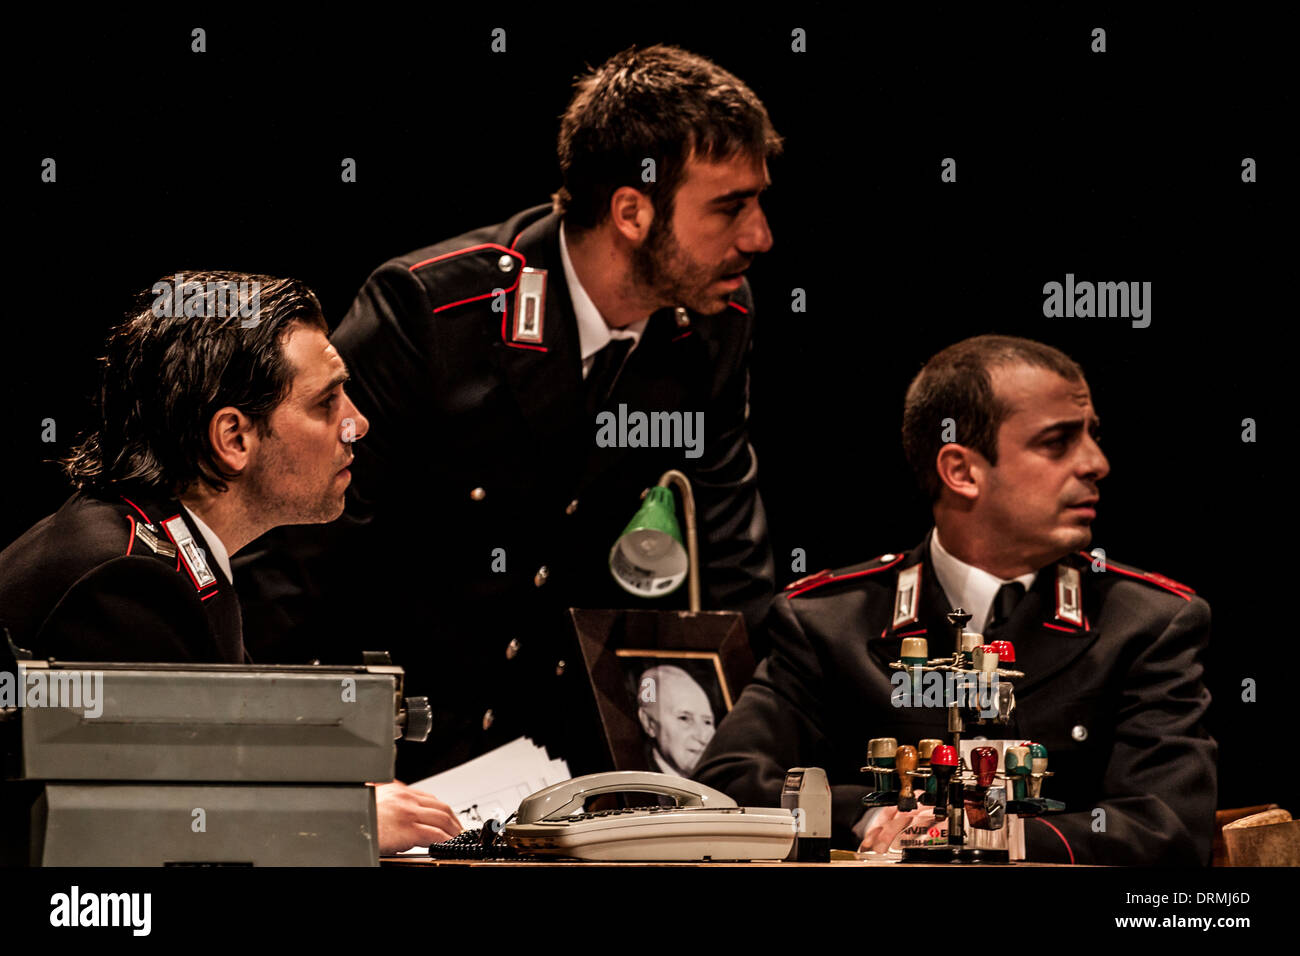 Minchia signor tenente - Teatro de' Servi - Roma Stock Photo - Alamy